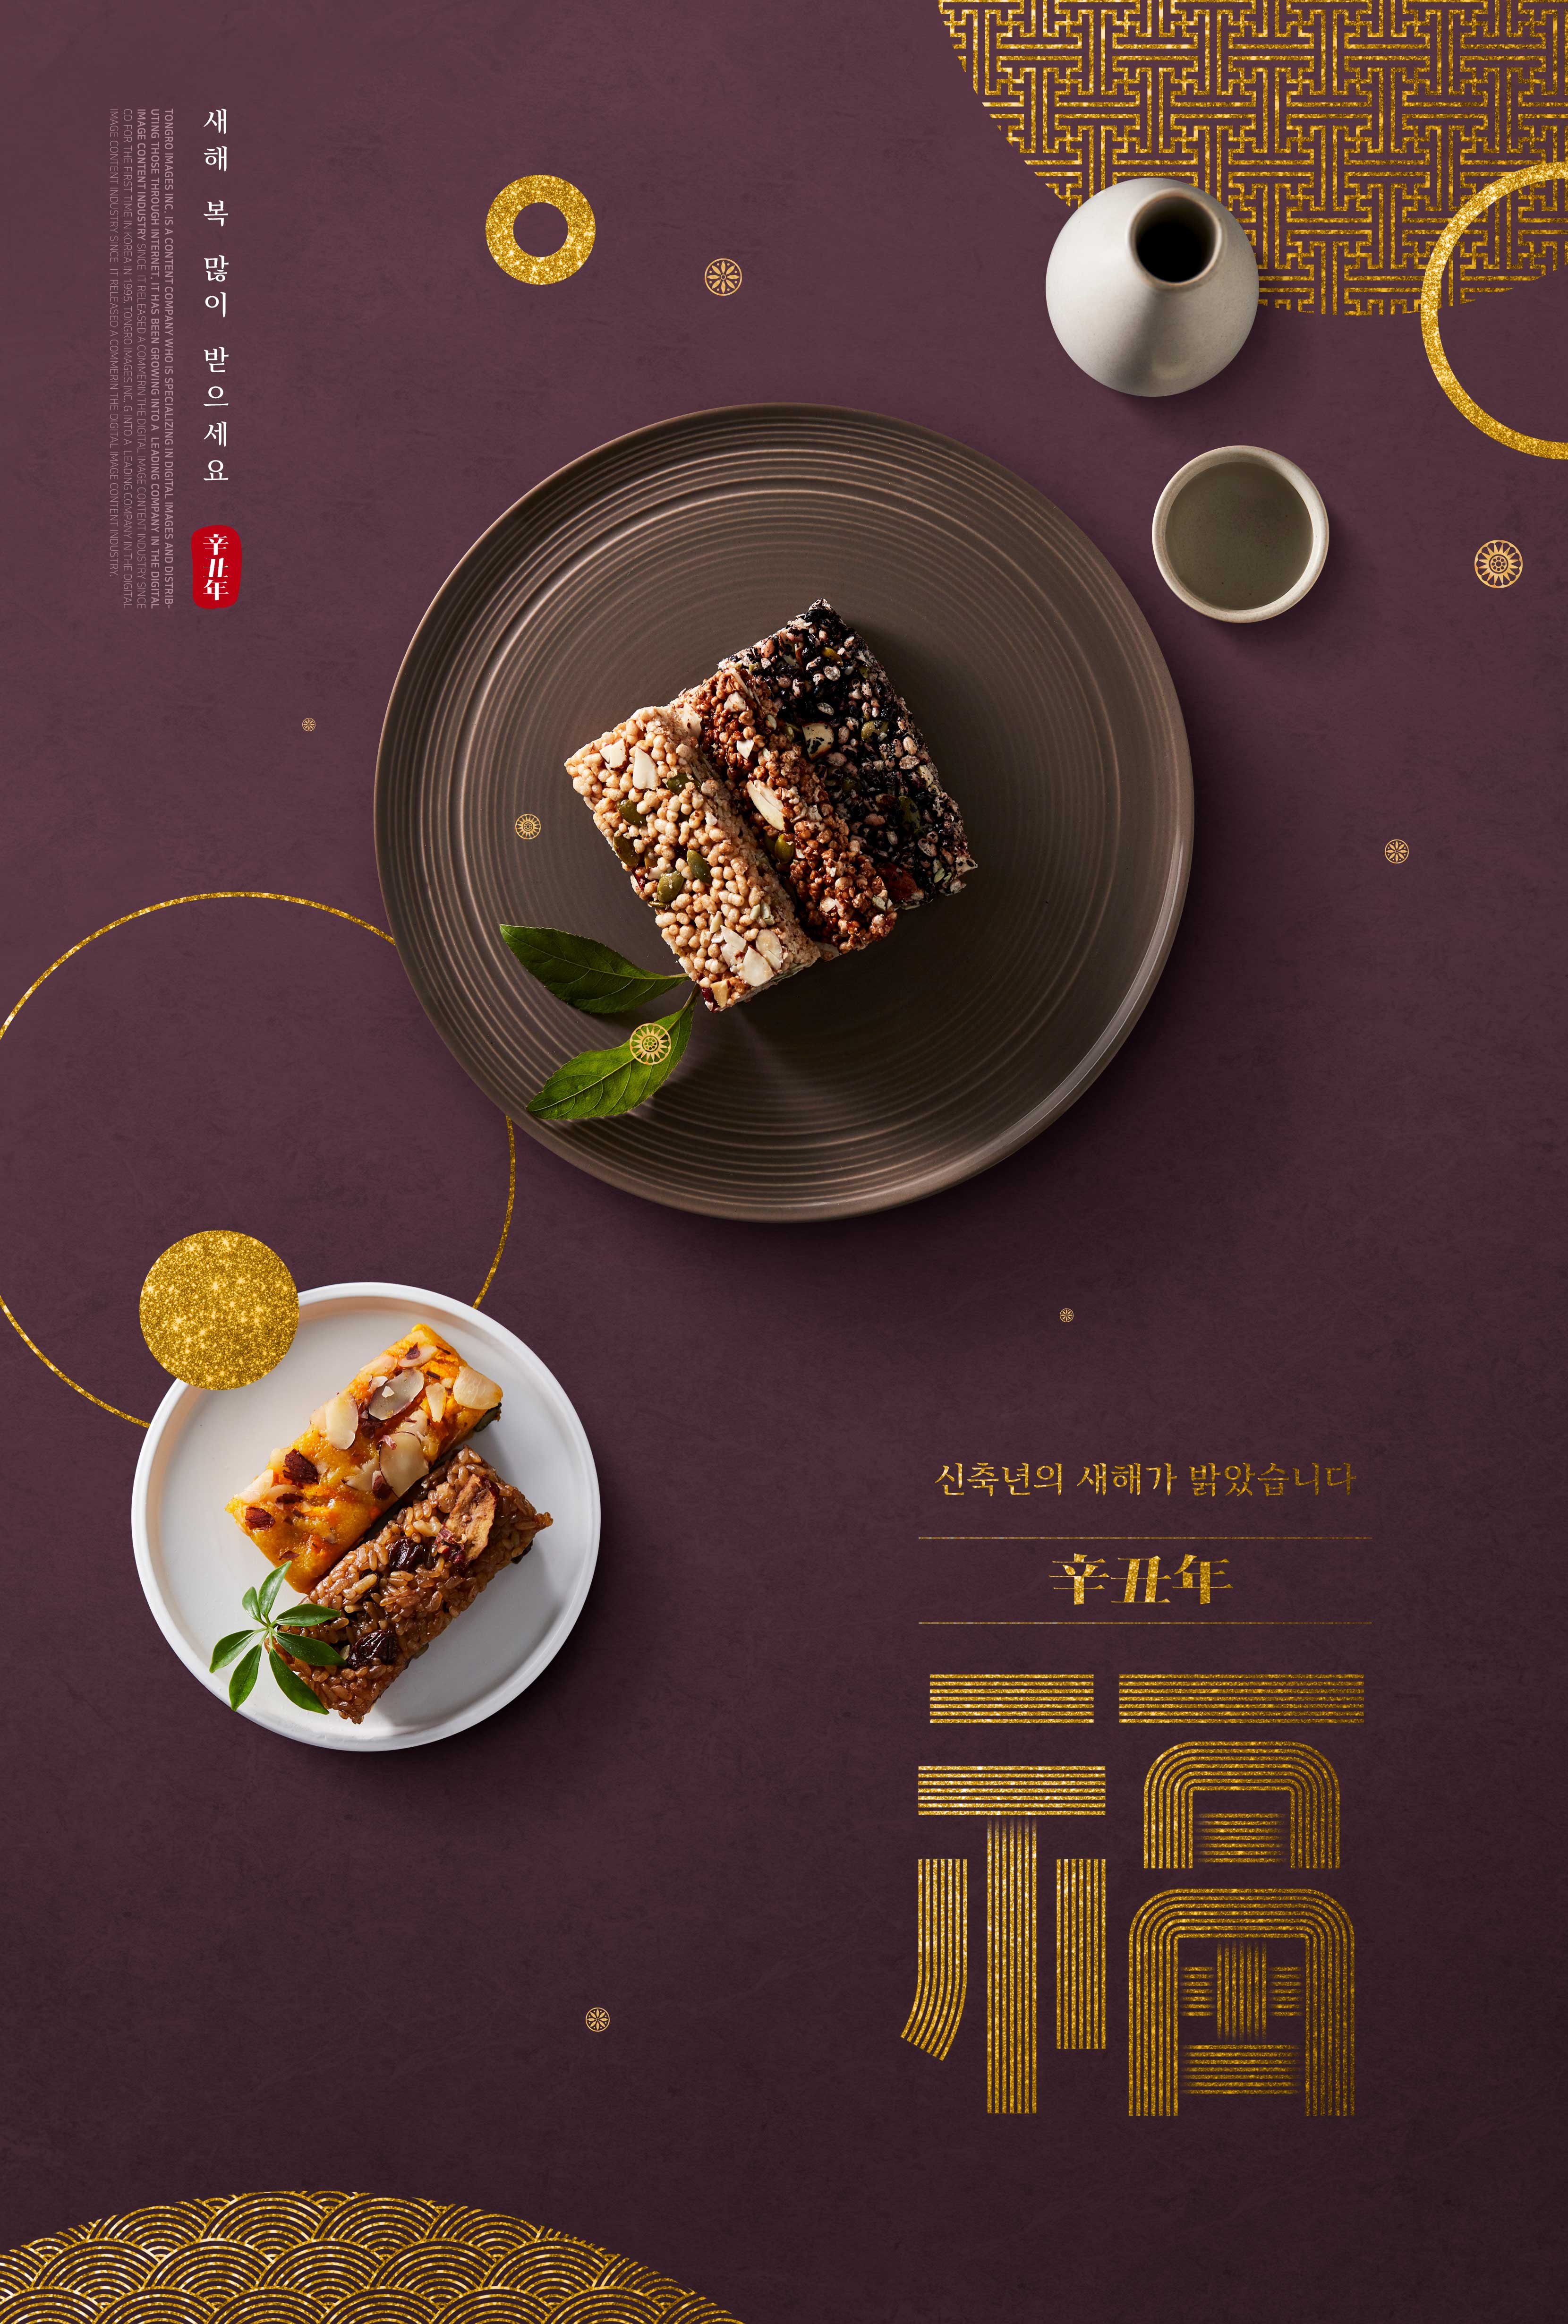 糕点食品2021辛丑年主题广告海报设计模板设计素材模板